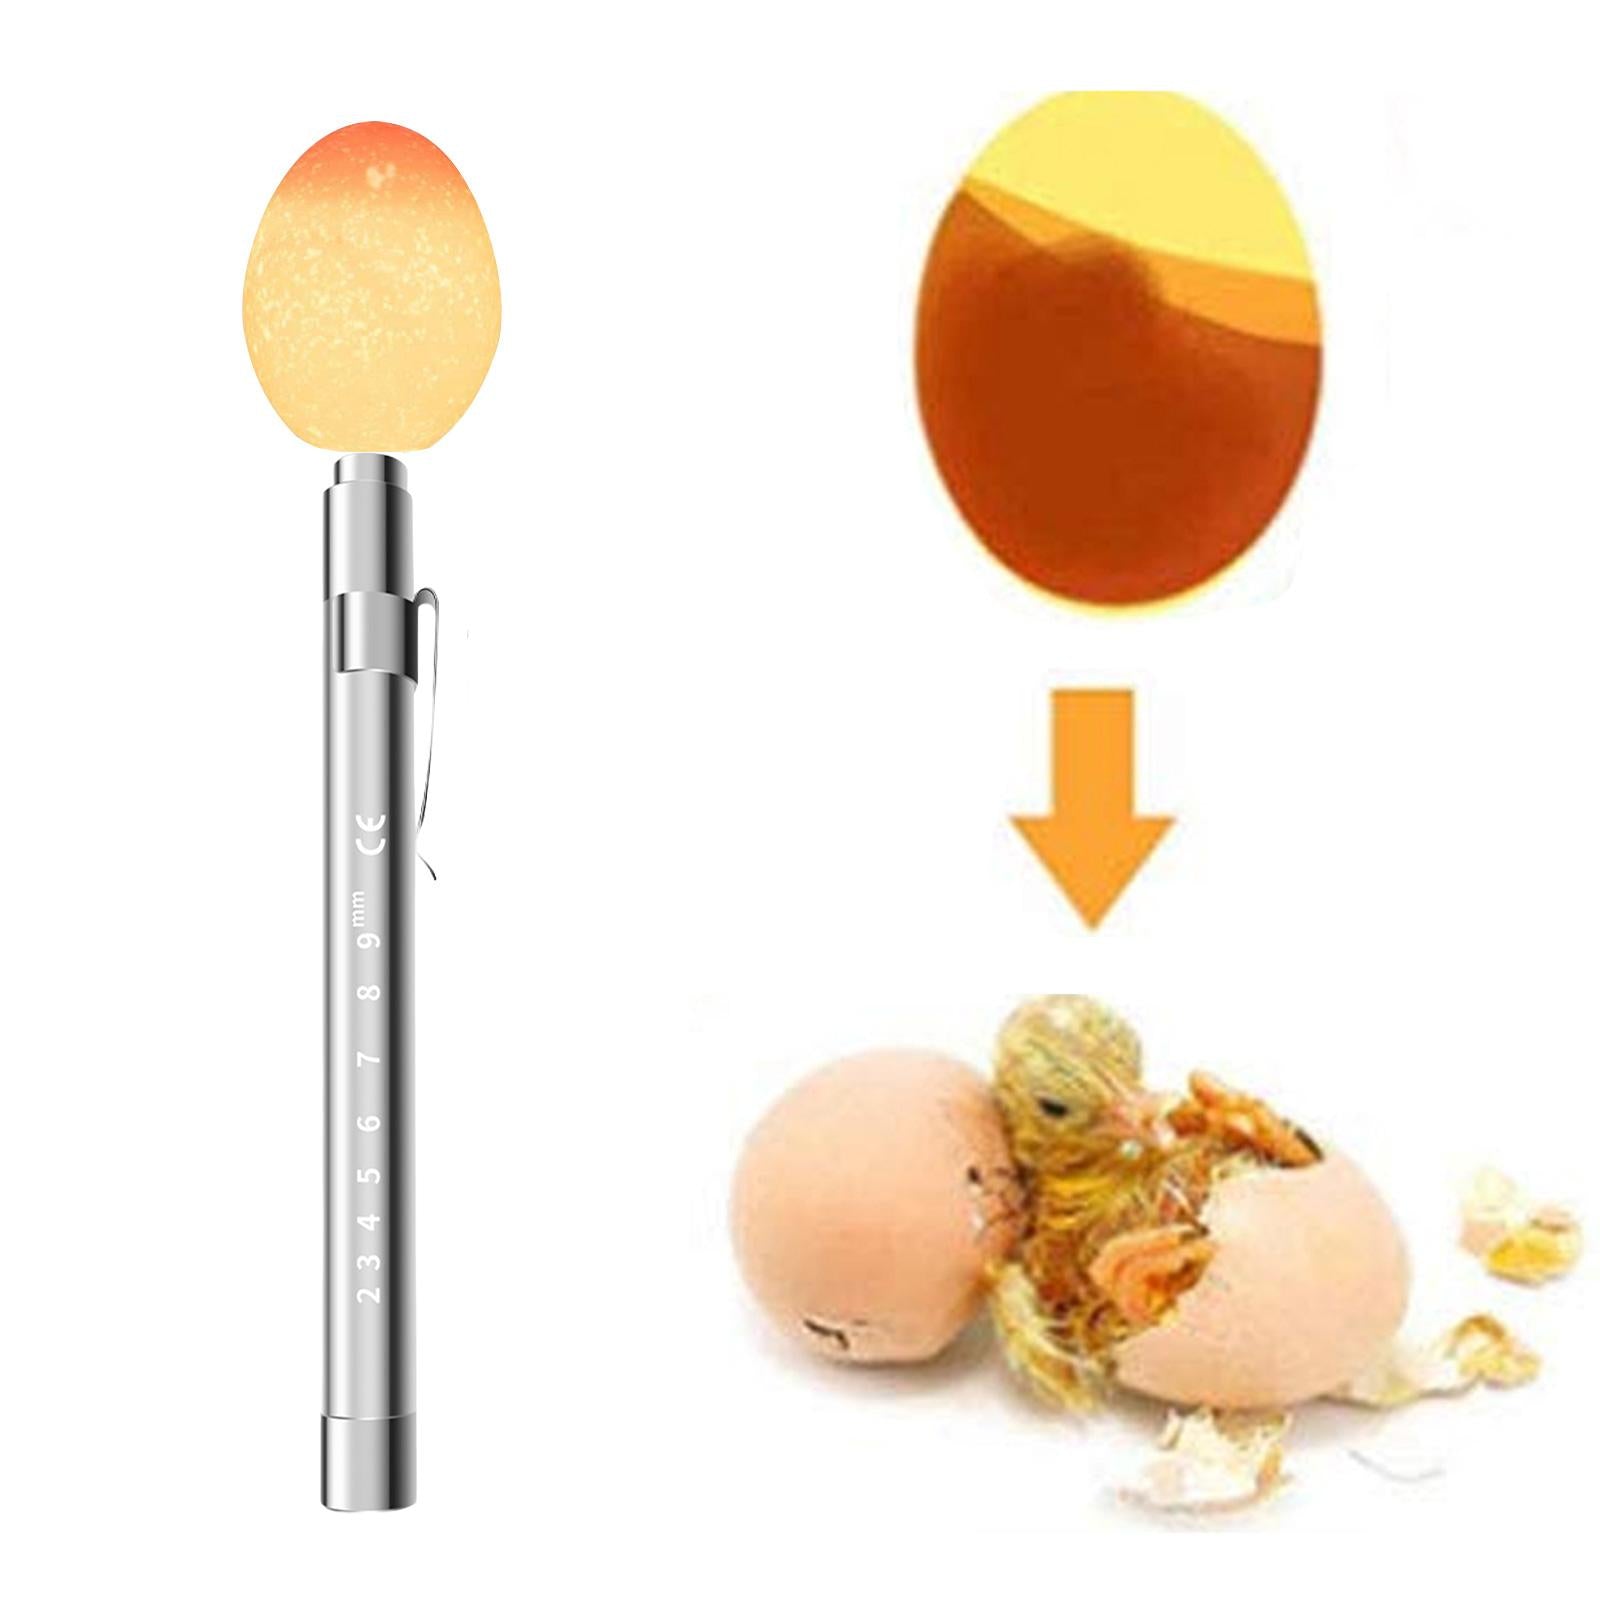 LED Light Egg Candler Tester Hatching Tool Egg Tester for Chicken Quail Duck Argent